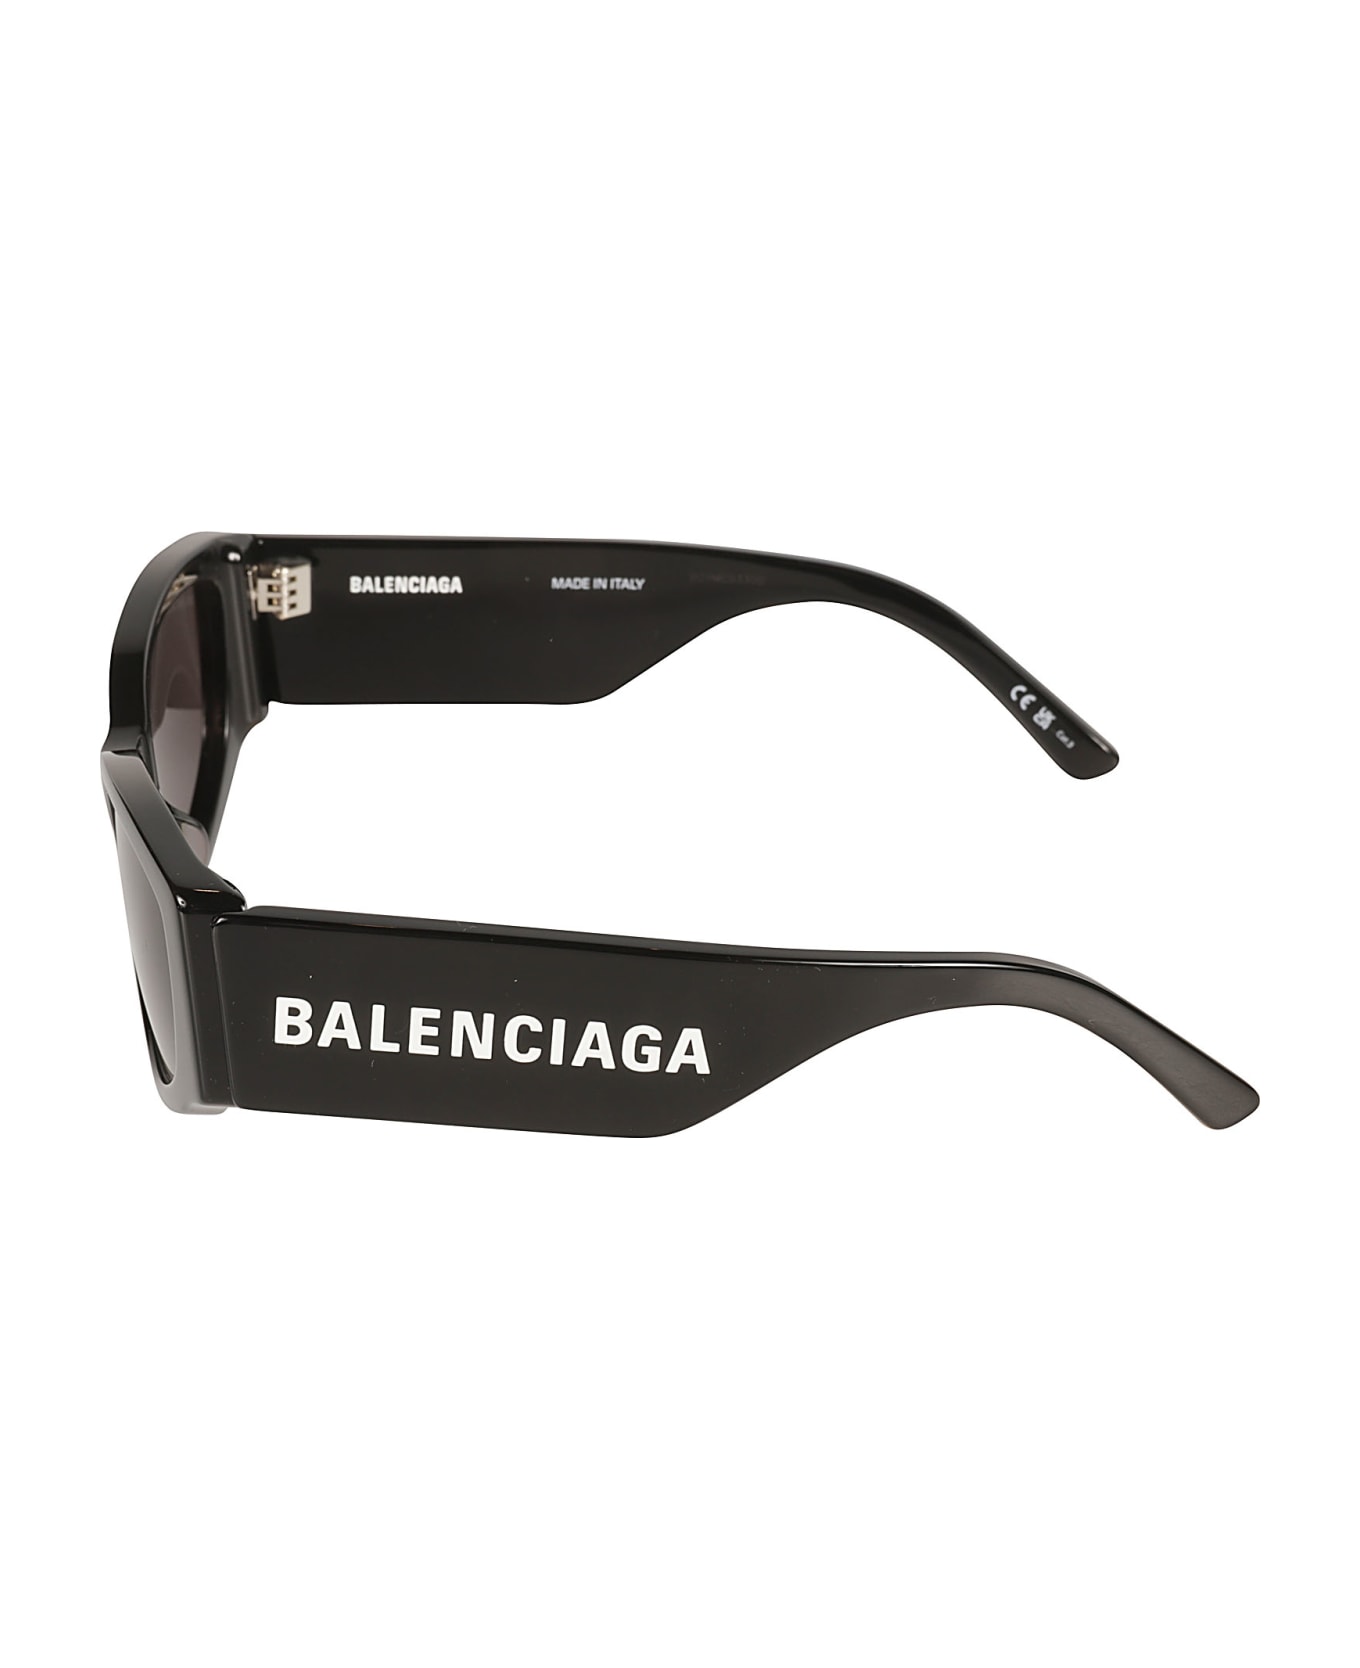 Balenciaga Eyewear Logo Sided Sunglasses - Black/Grey